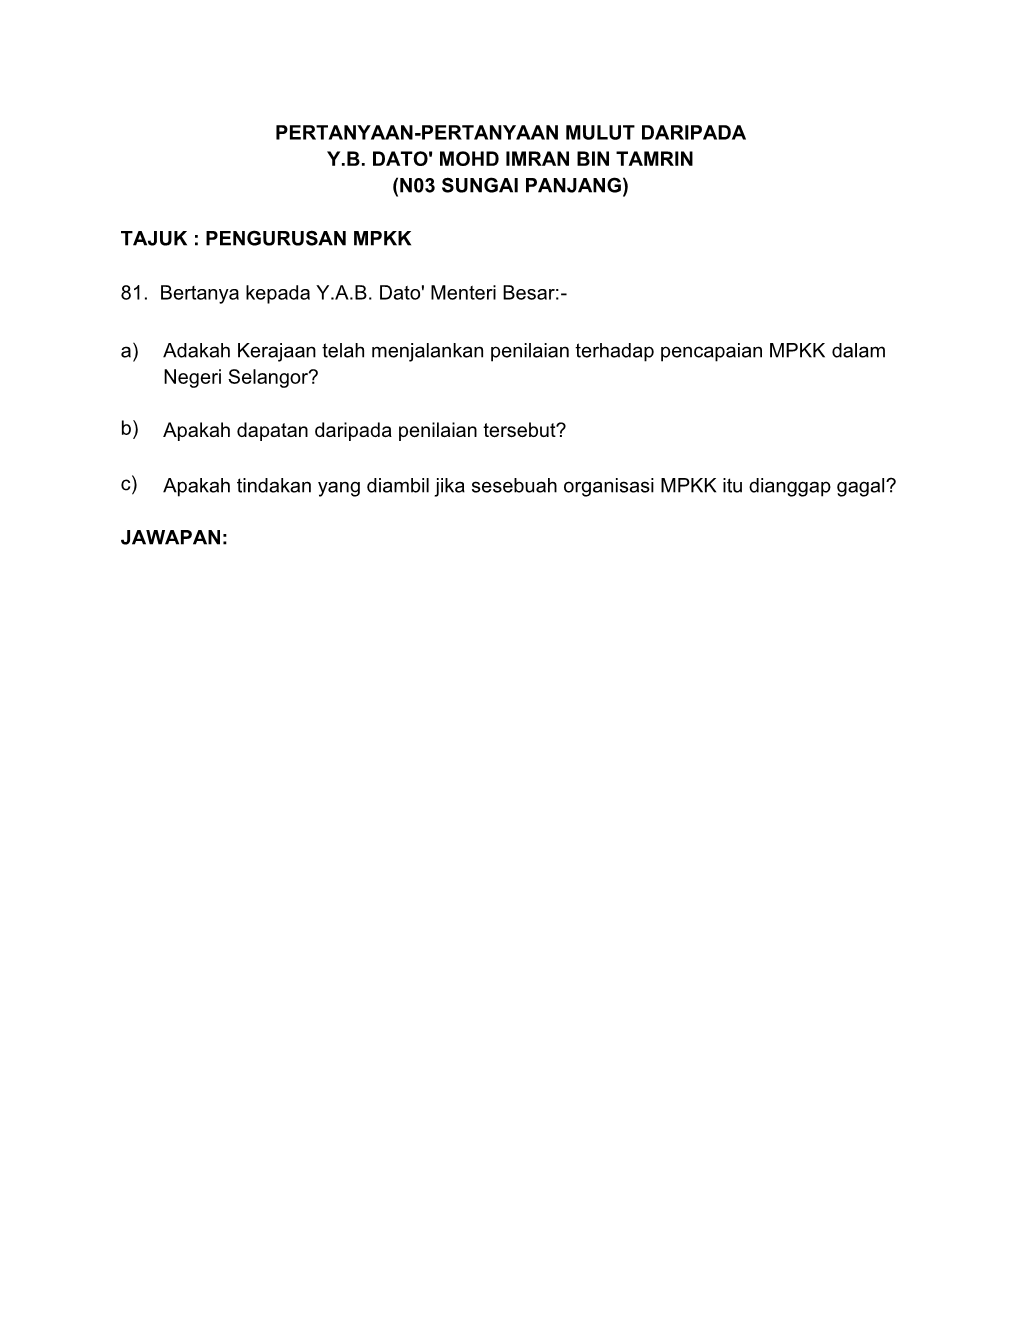 Pertanyaan-Pertanyaan Mulut Daripada Y.B. Dato' Mohd Imran Bin Tamrin (N03 Sungai Panjang)